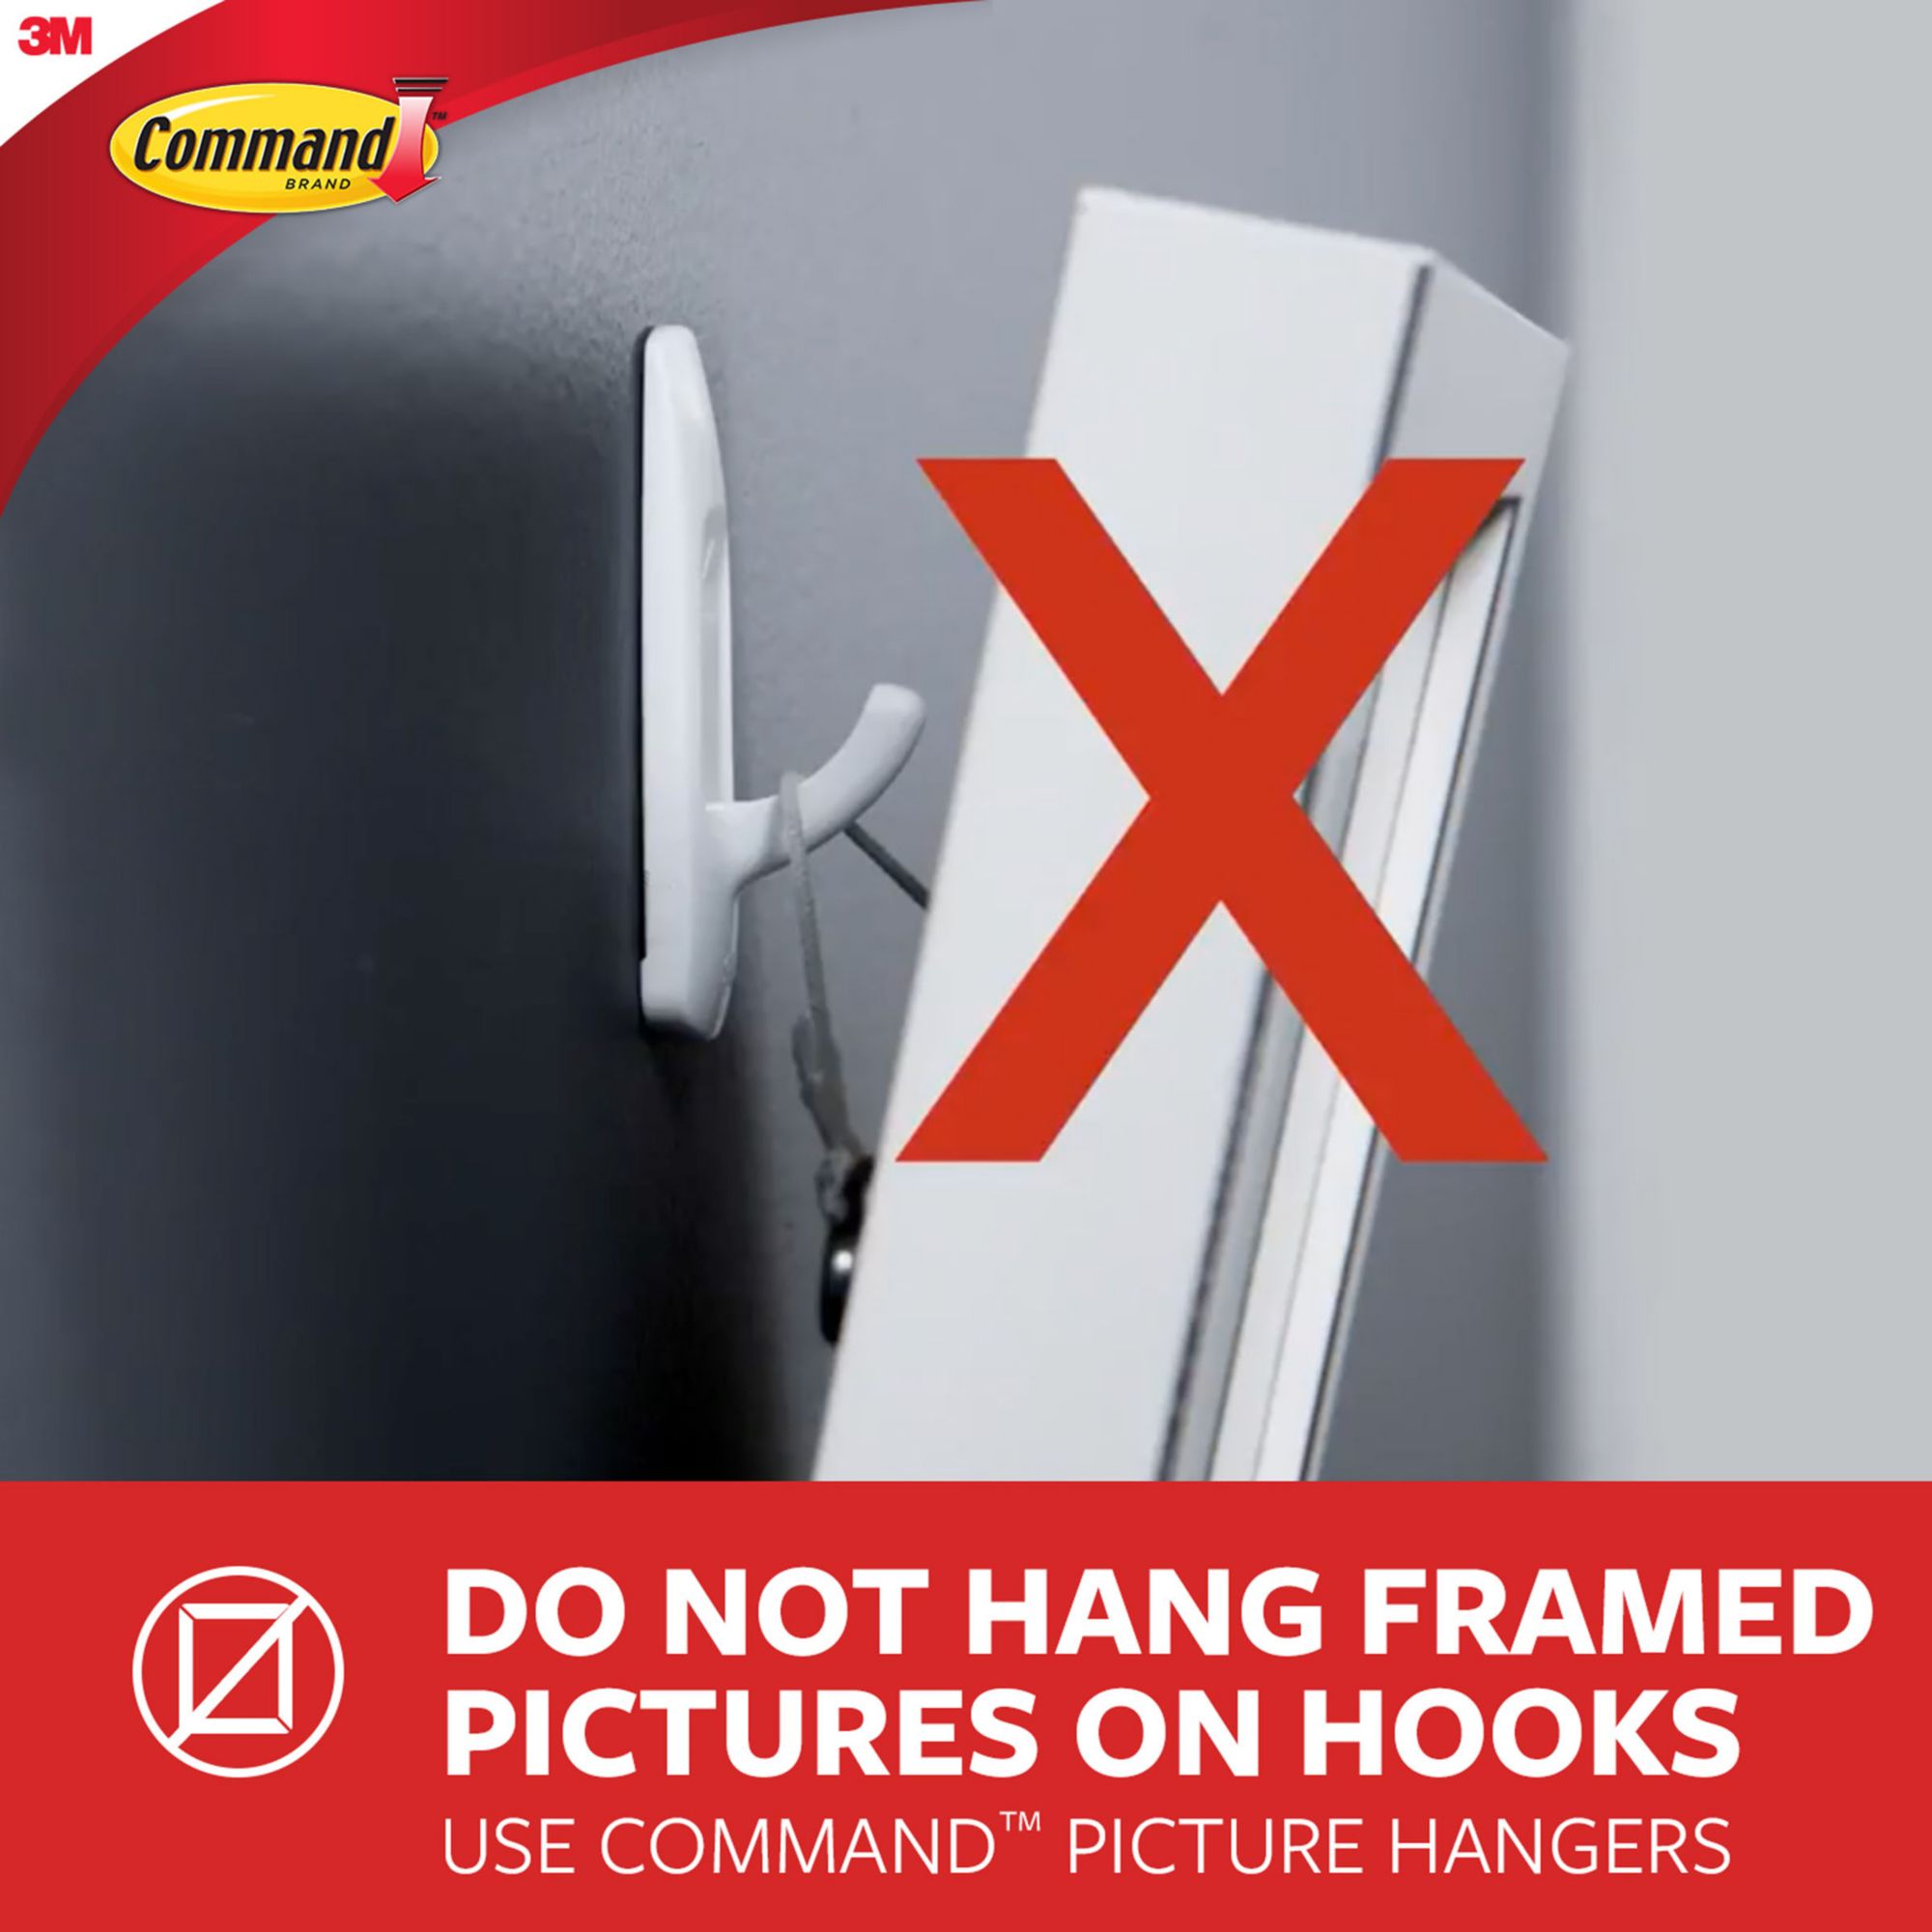 Command Damage-Free Hanging Metal Hooks, 2 pk. - Brushed Metal